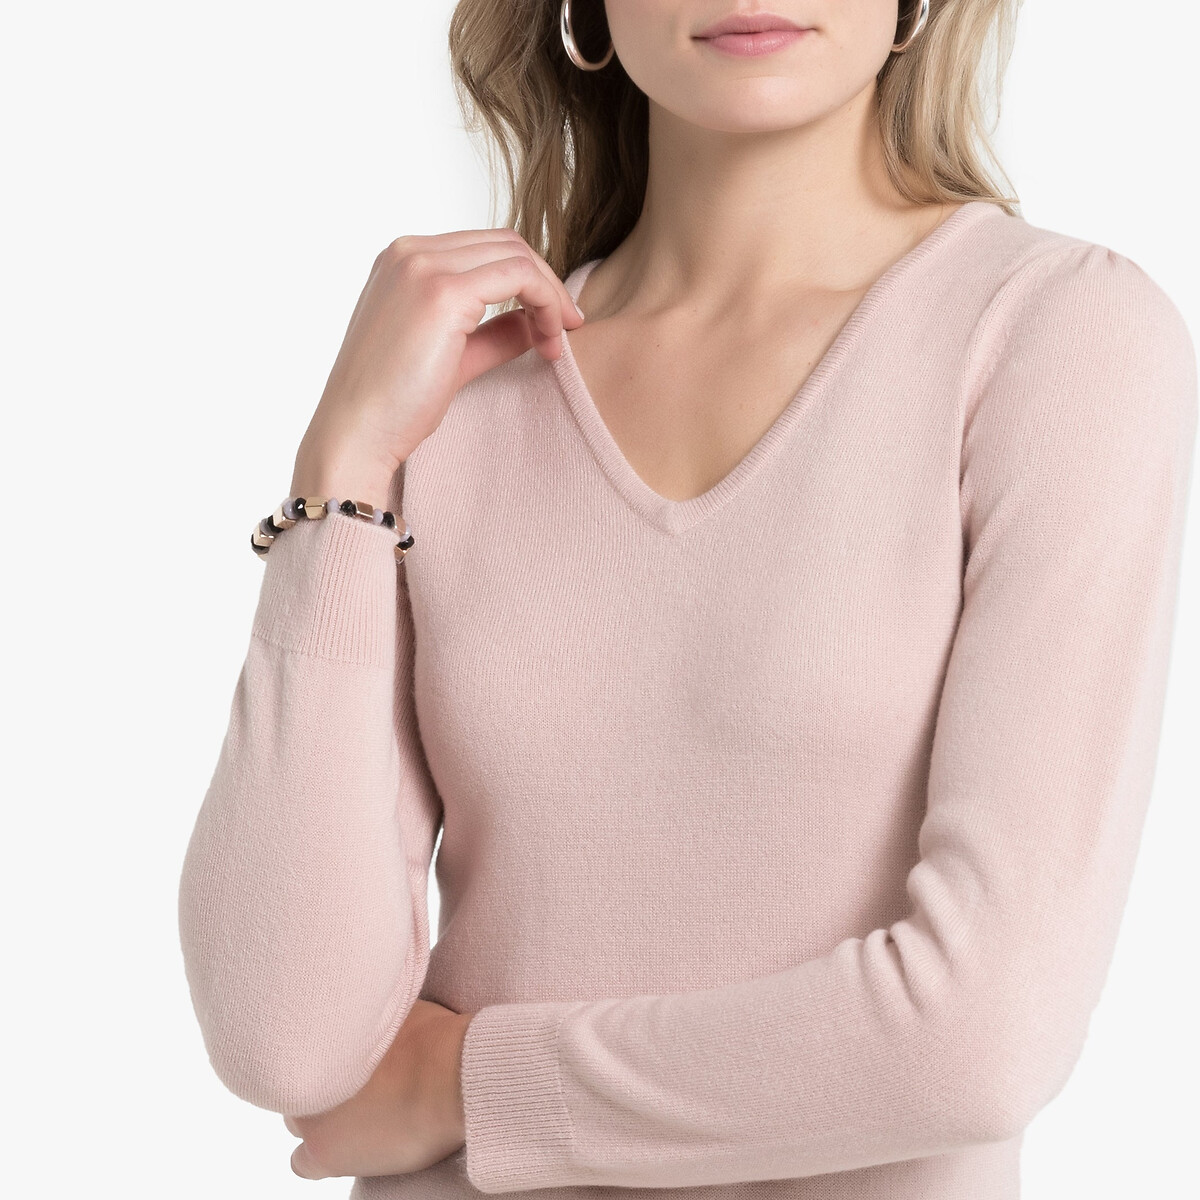 Пуловер La Redoute С V-образным вырезом из тонкого трикотажа 34/36 (FR) - 40/42 (RUS) розовый, размер 34/36 (FR) - 40/42 (RUS) С V-образным вырезом из тонкого трикотажа 34/36 (FR) - 40/42 (RUS) розовый - фото 3